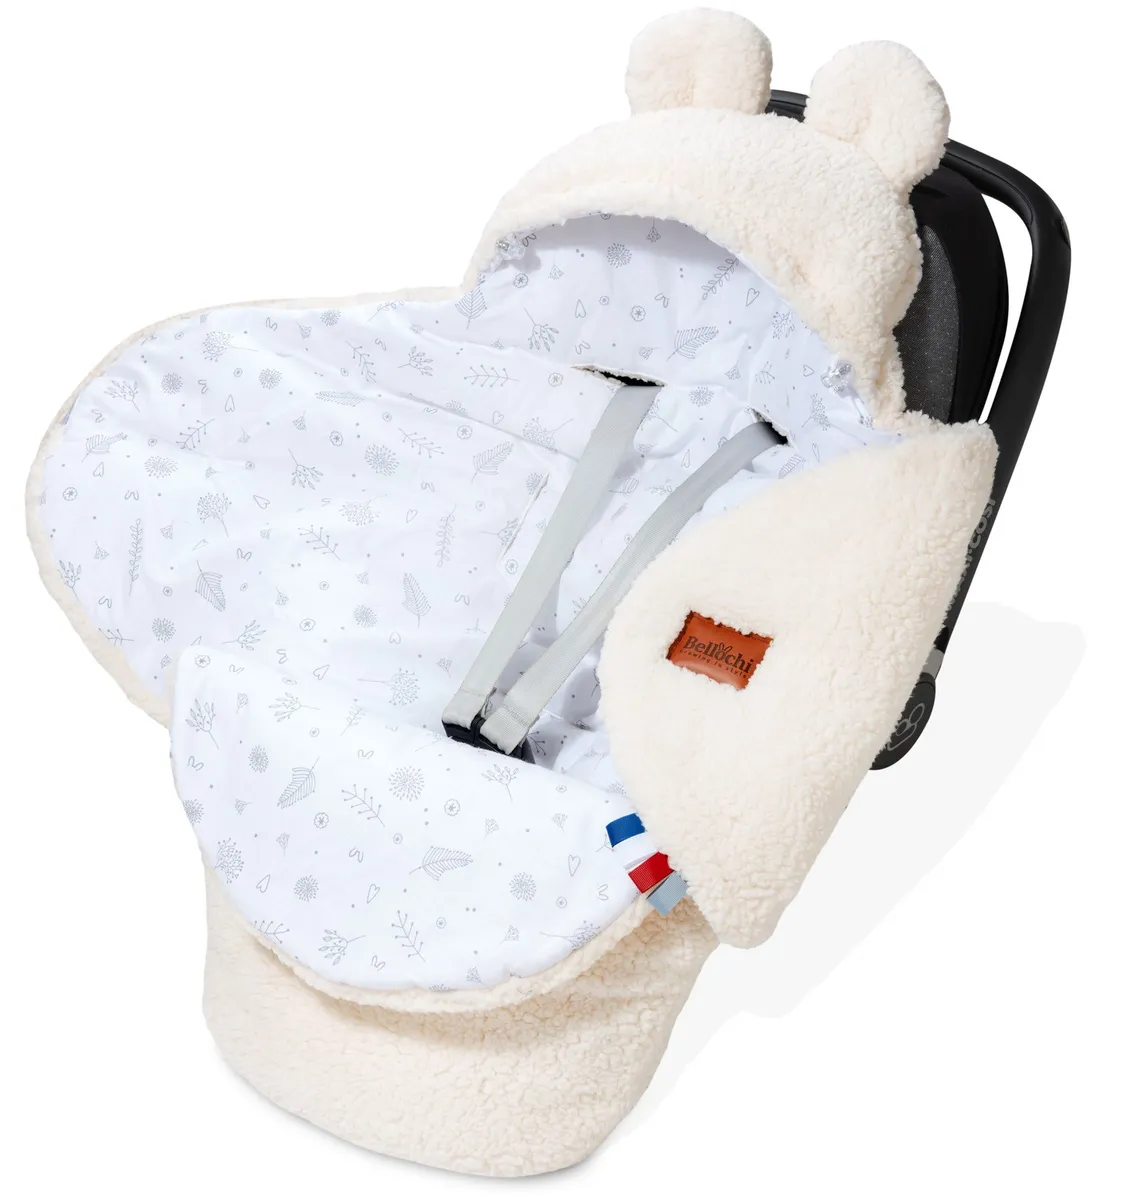 Pătură pentru scaun auto de bebeluși 90×90 cm, ursuleț alb – Teddy white